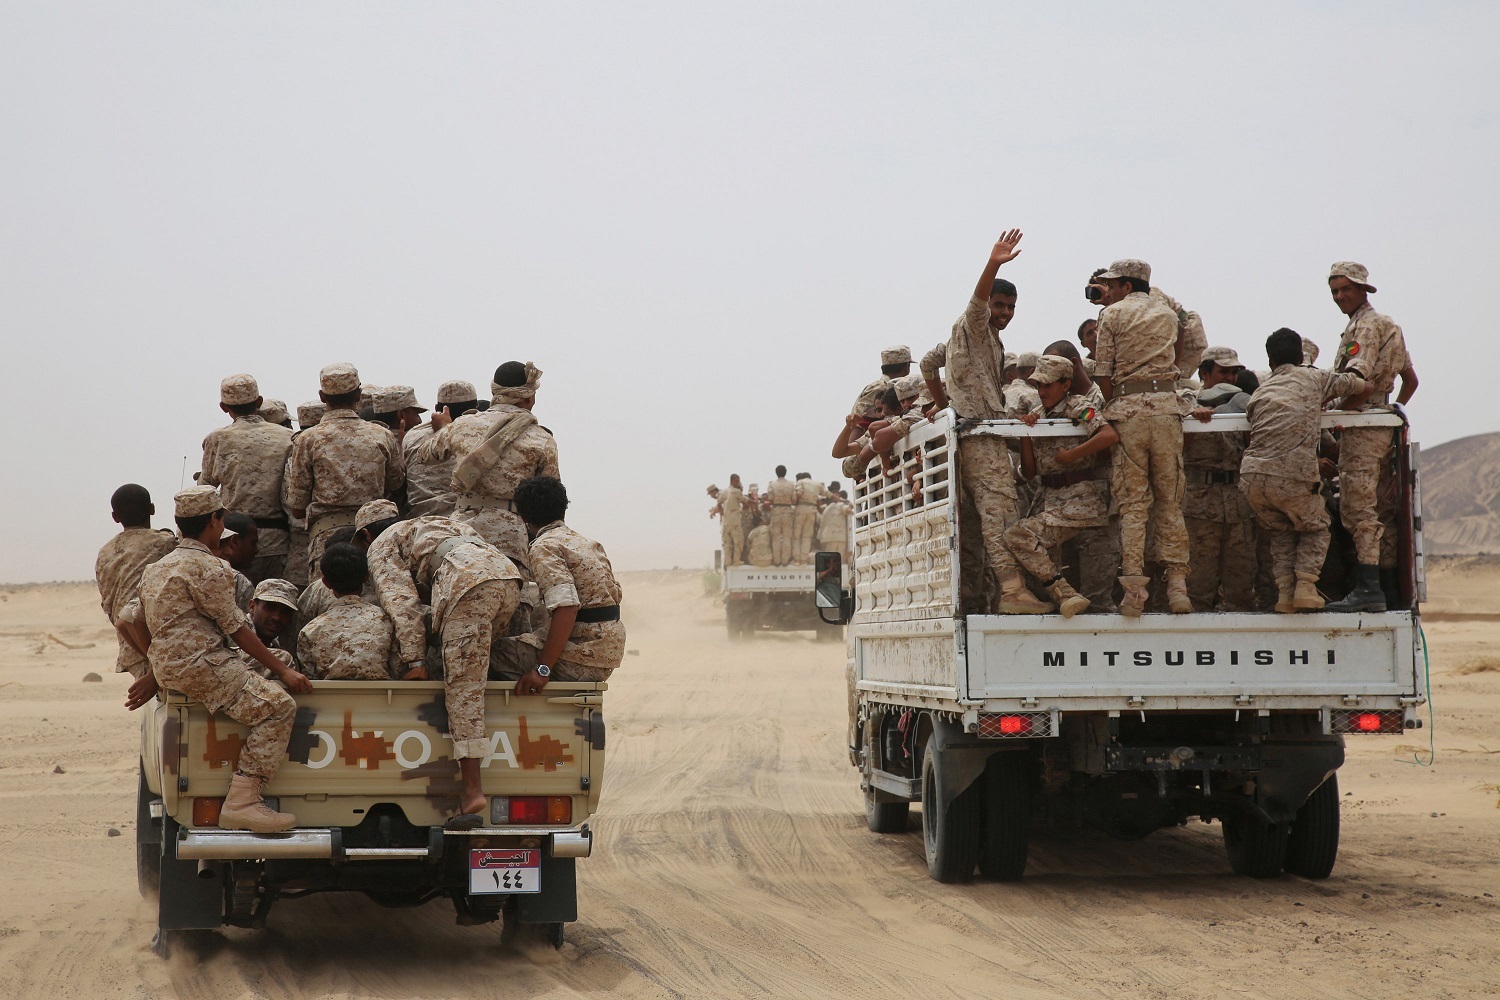 عاجل: قوات سودانية تنتشر في العاصمة بشكل كثيف .. ومصادر تكشف الأسباب؟!